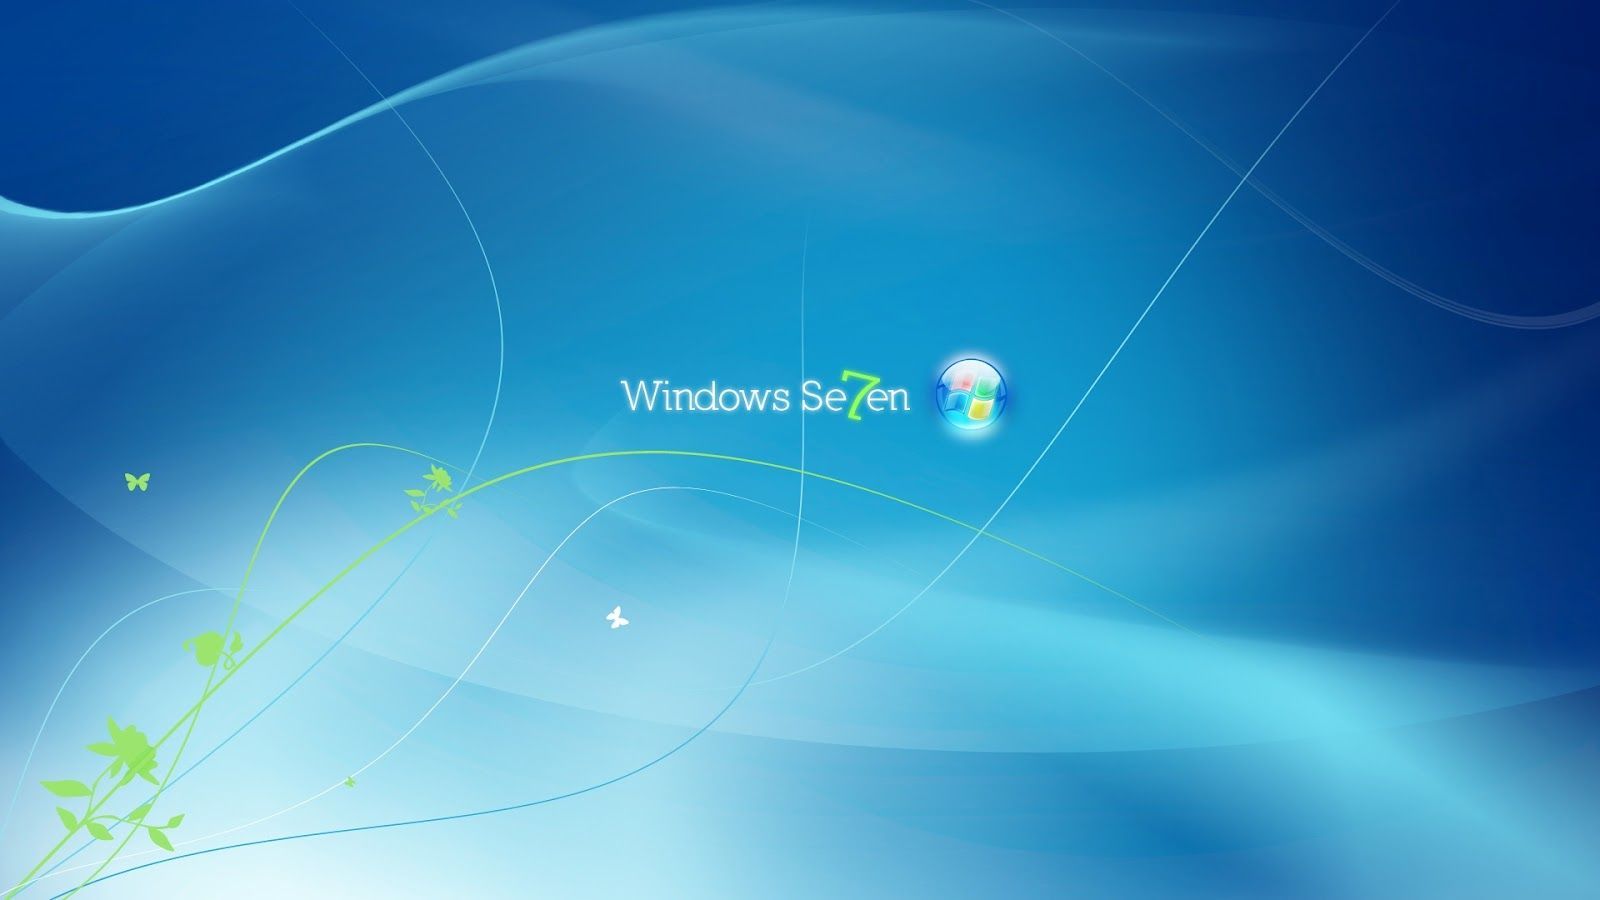 Hd Desktop Wallpaper Windows 7 | My Heart up Close